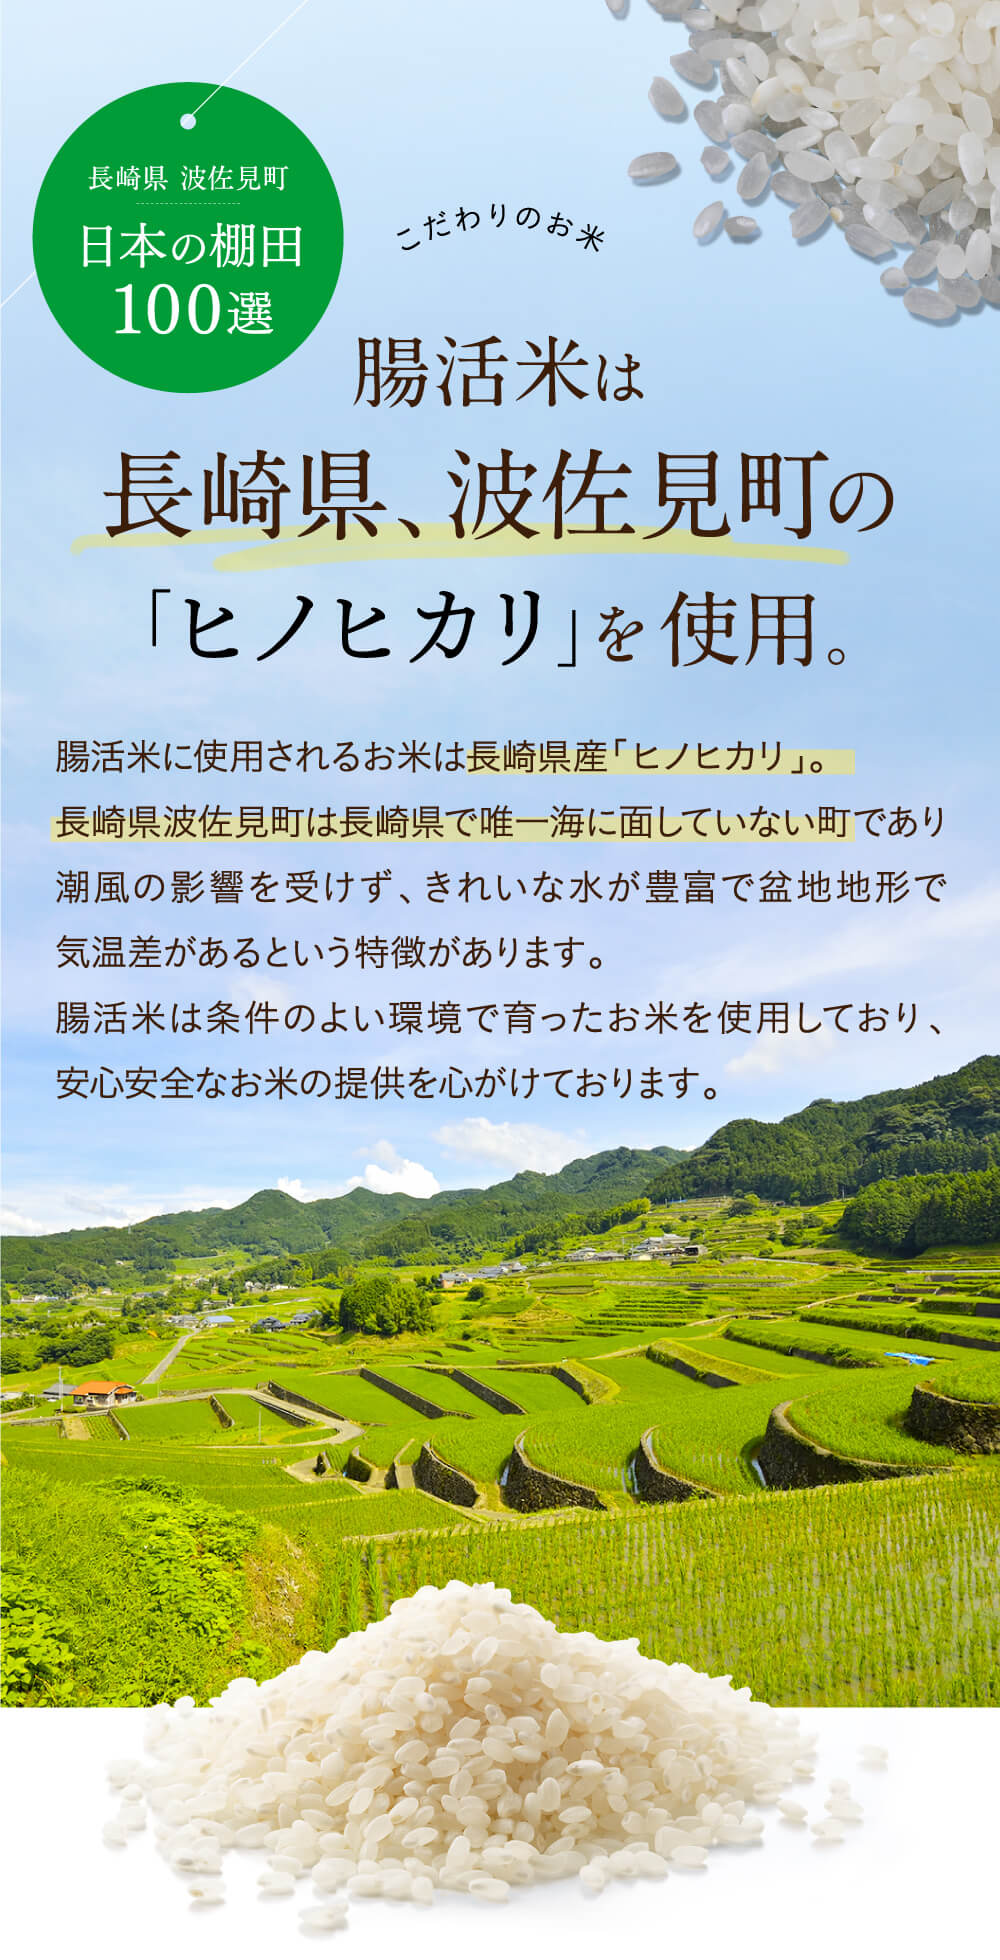 腸活米は長崎県、波佐見町の「ヒノヒカリ」を使用